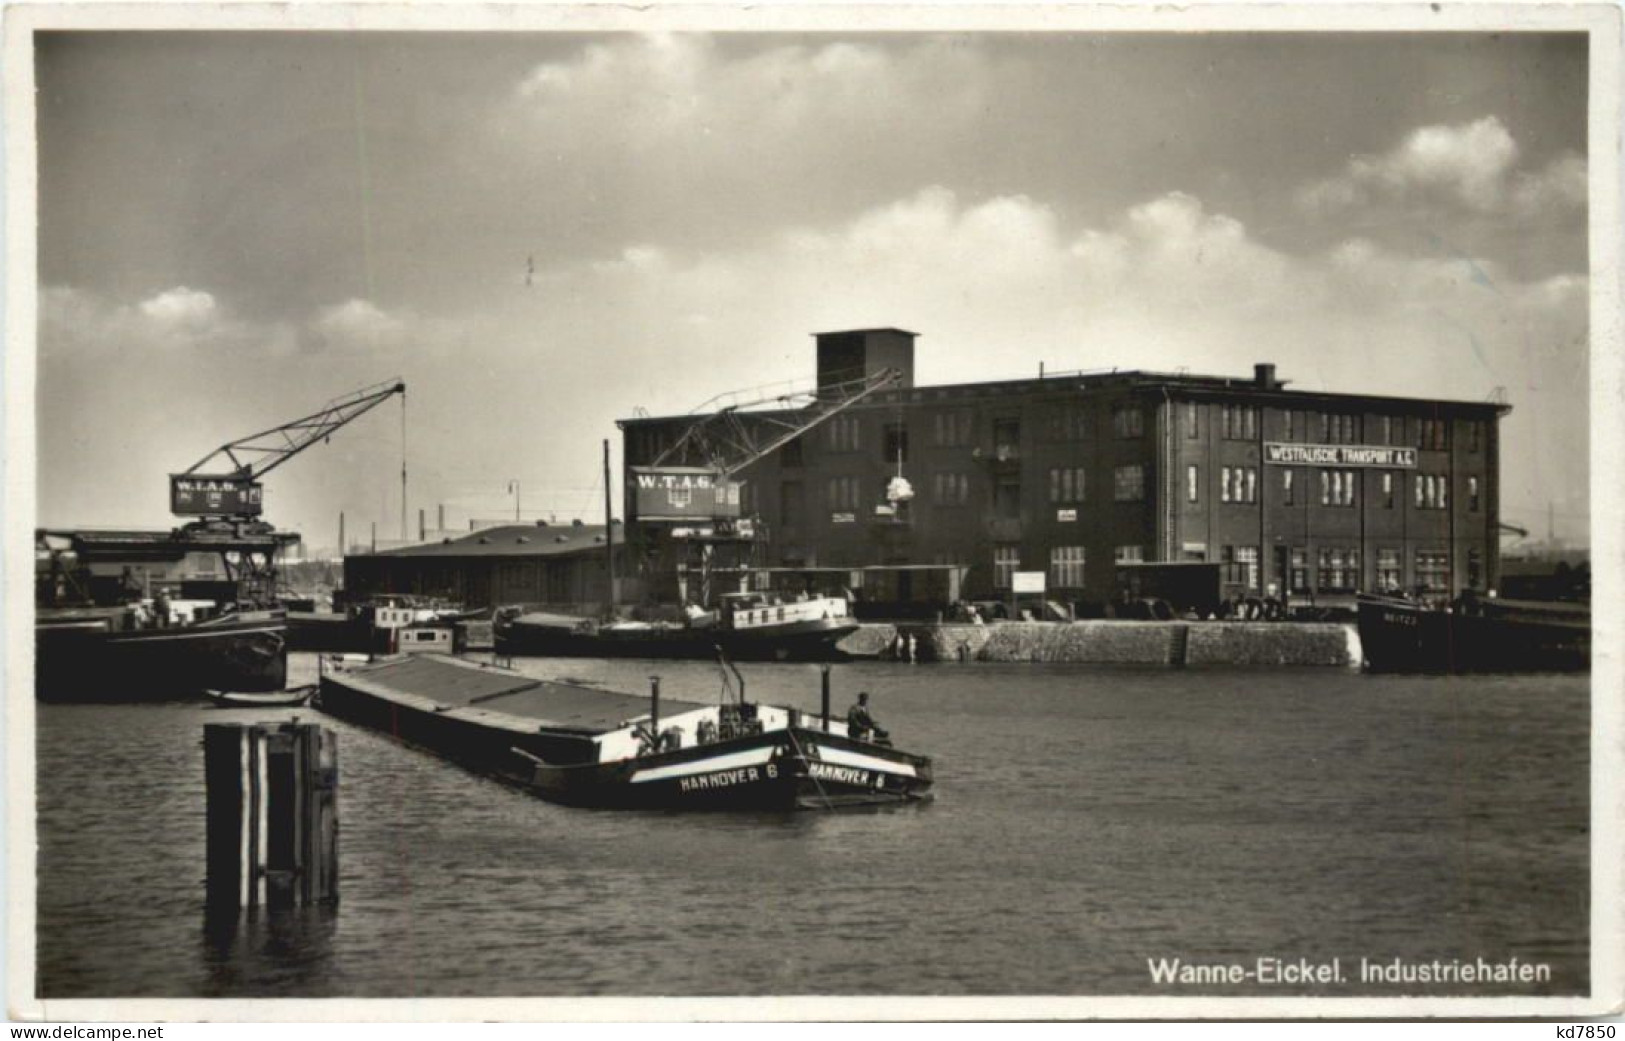 Wanne-Eickel - Industriehafen - Herne